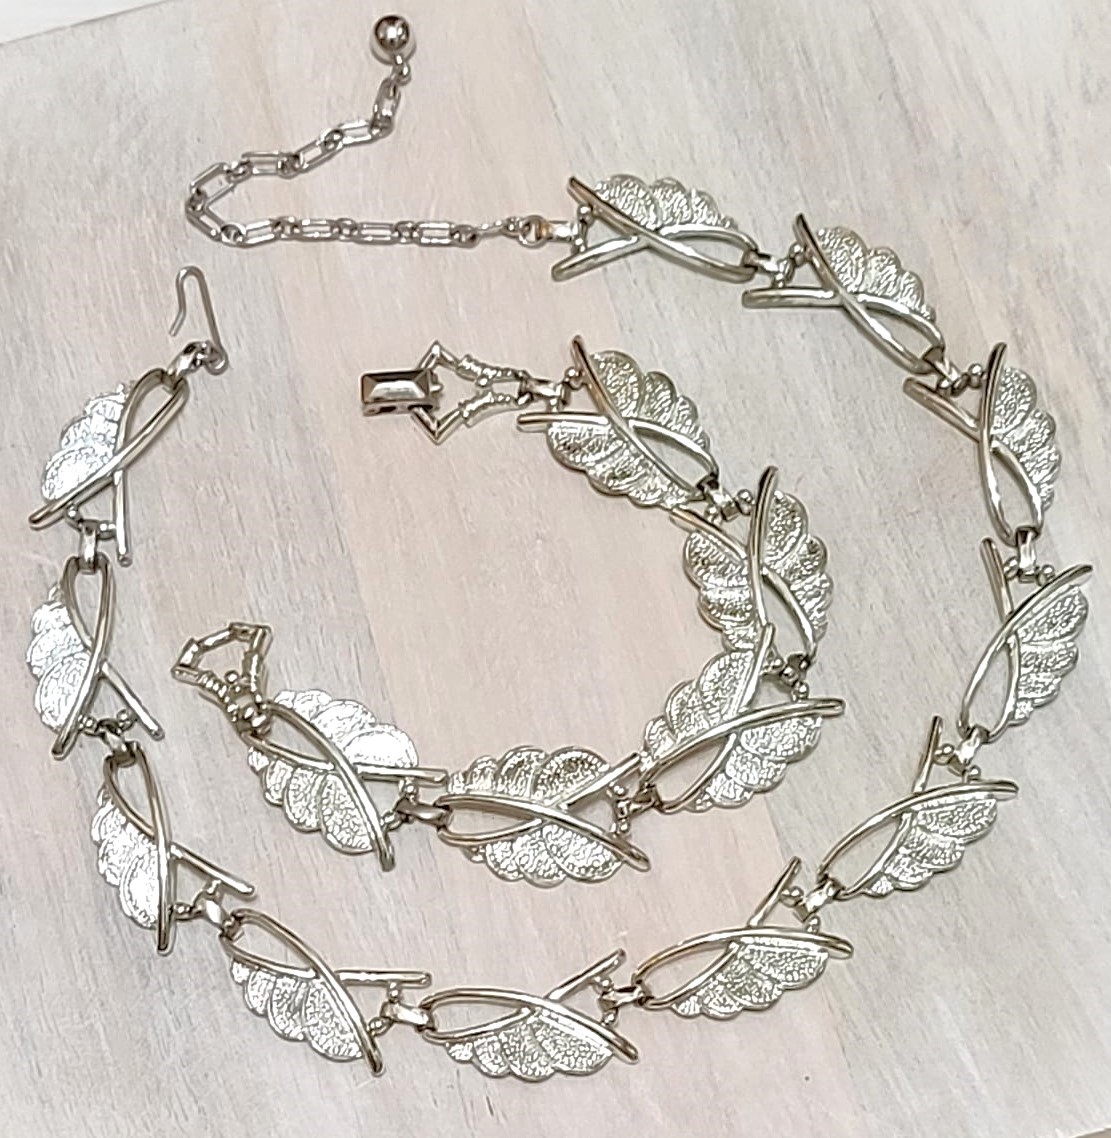 Vintage necklace and bracelet set - leaf motif design silvertone